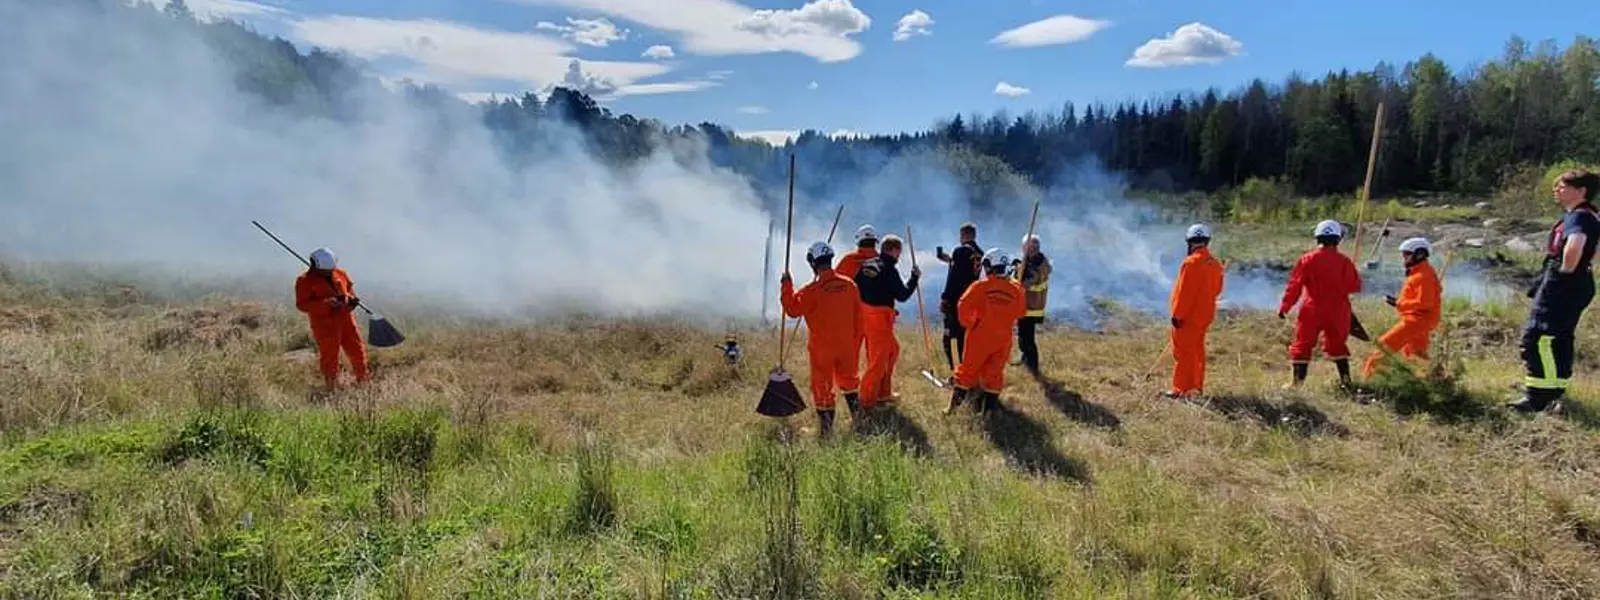 Medlemmar ur brandvärnet släcker gräsbrand